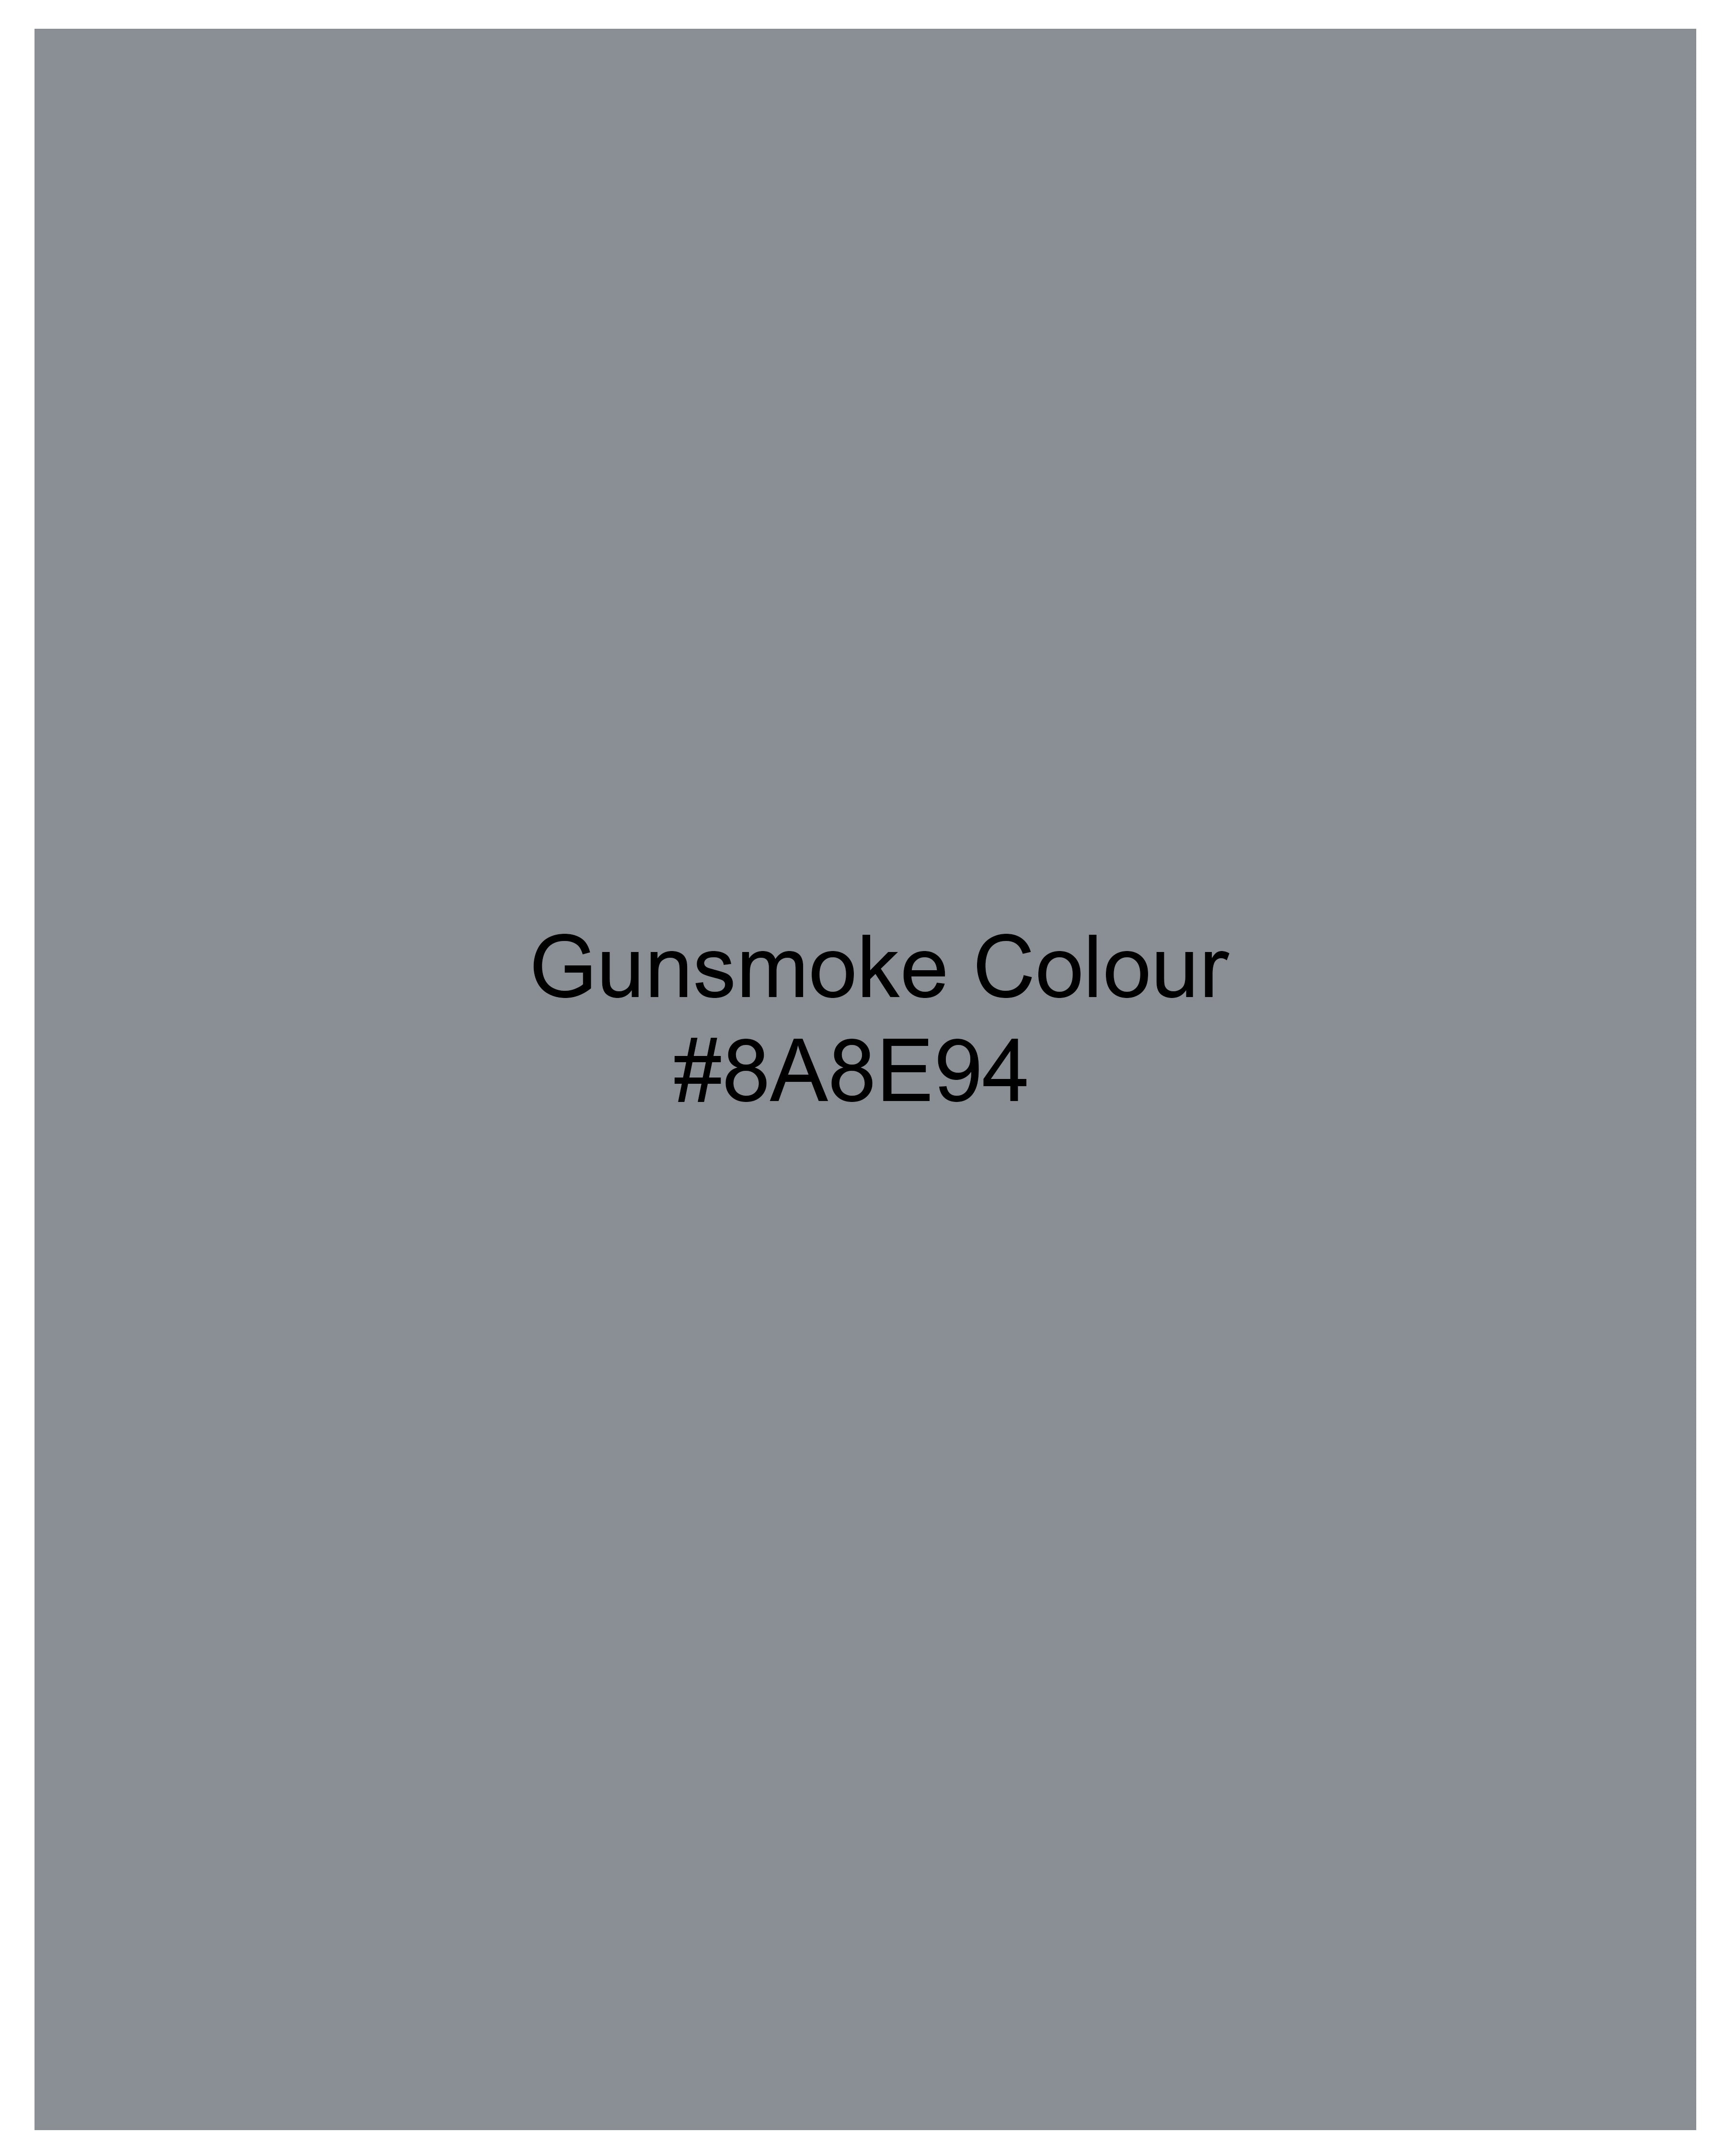 Gunsmoke Gray Gingham Checkered Premium Cotton Crop Top WTP018-32, WTP018-34, WTP018-36, WTP018-38, WTP018-40, WTP018-42